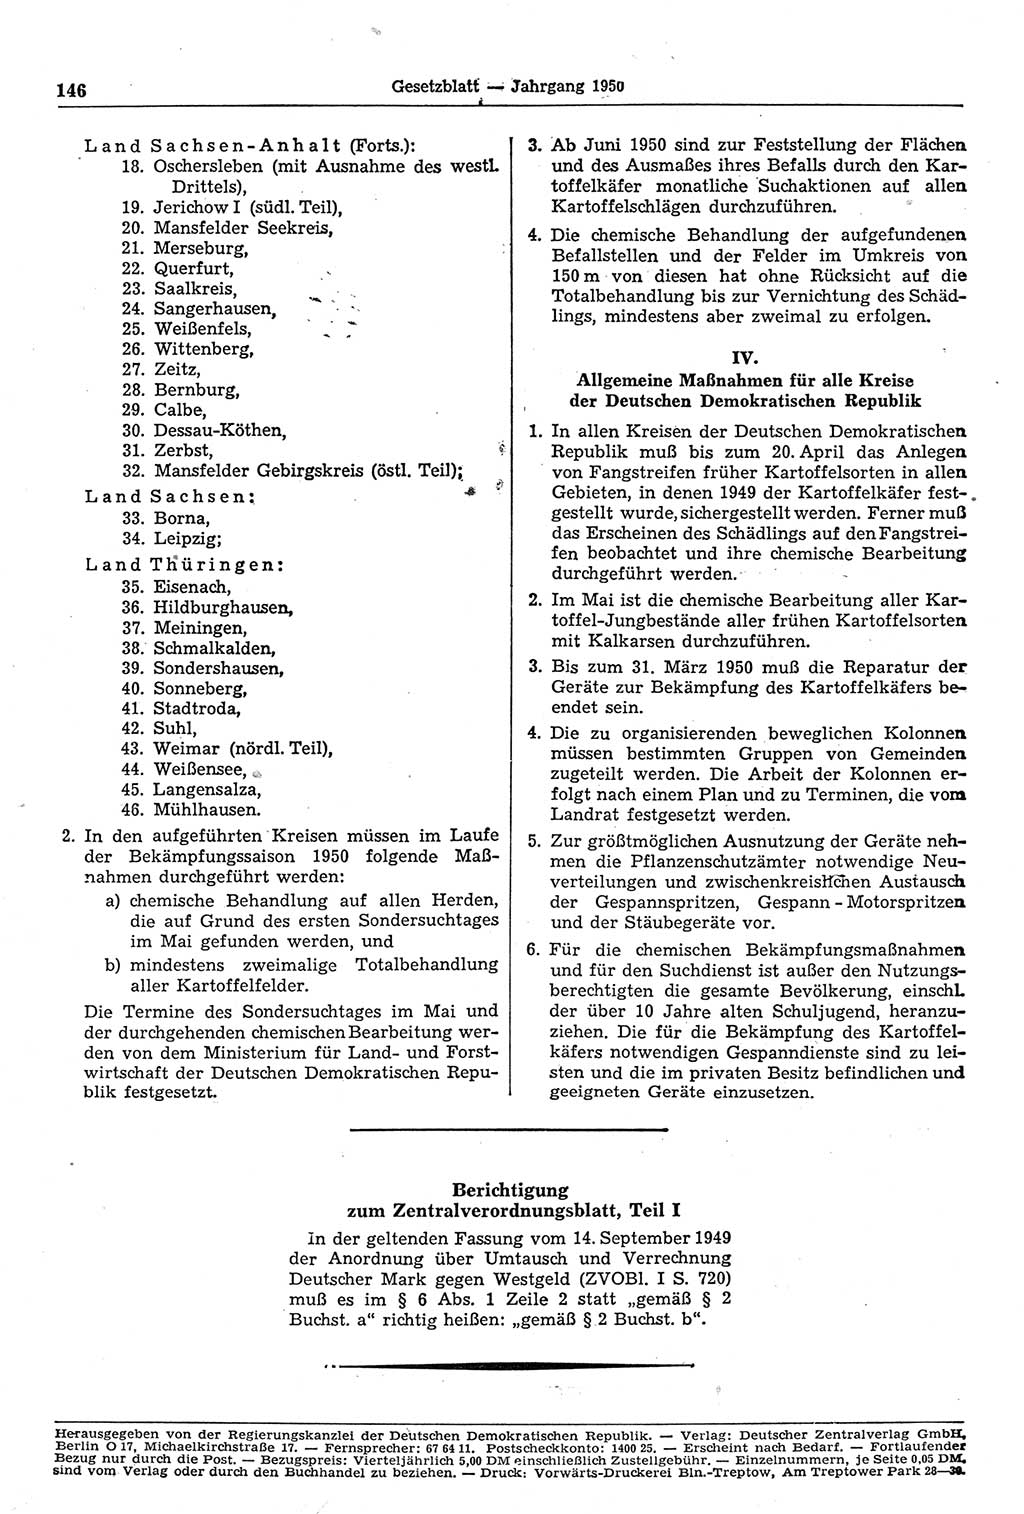 Gesetzblatt (GBl.) der Deutschen Demokratischen Republik (DDR) 1950, Seite 146 (GBl. DDR 1950, S. 146)